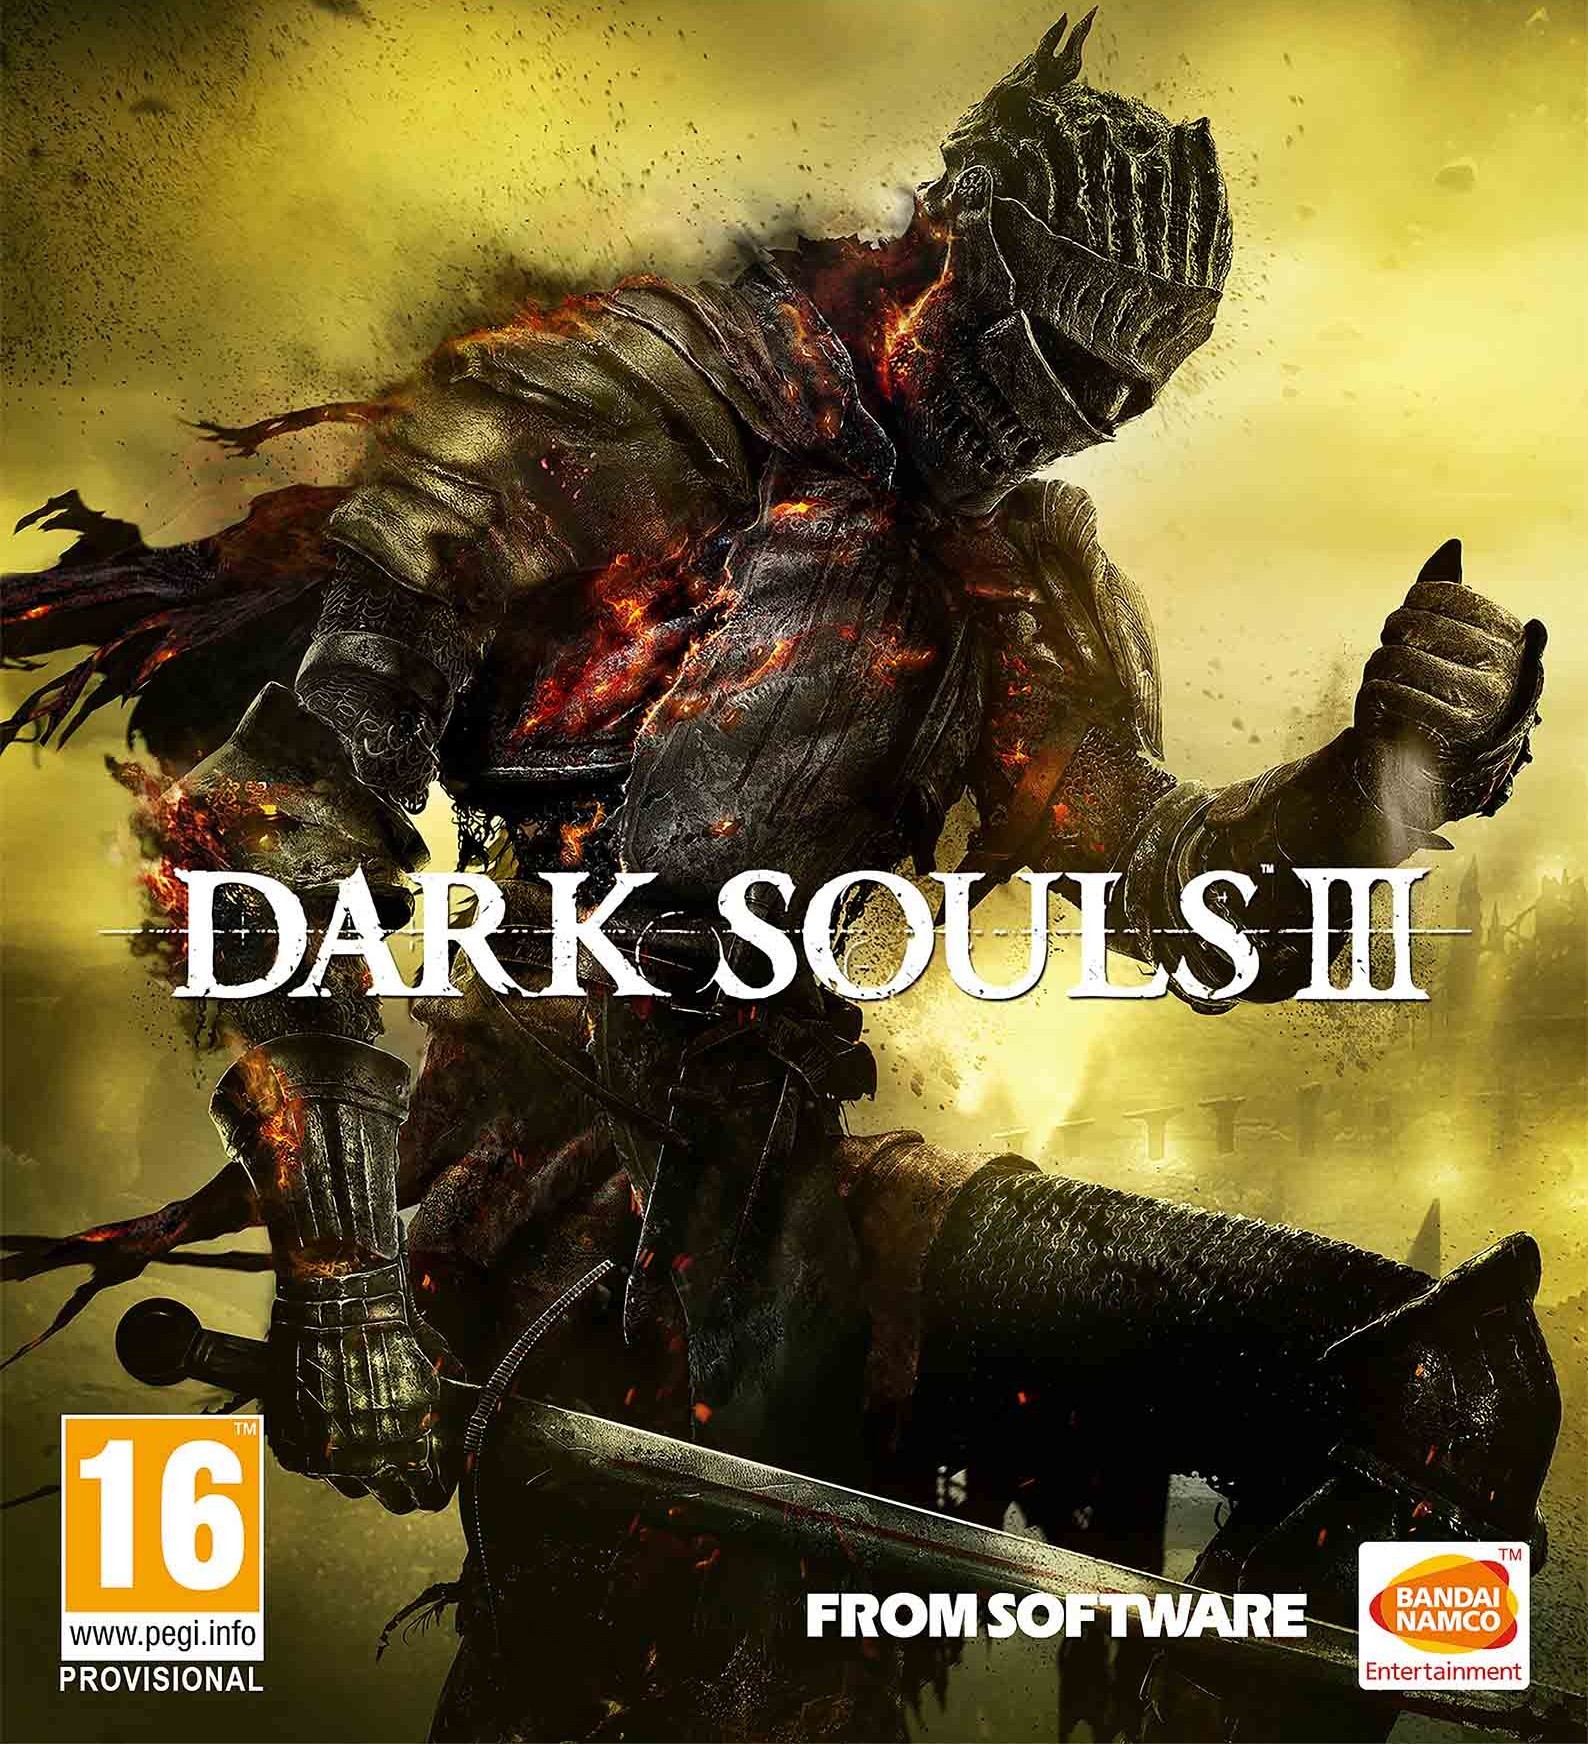 سی دی کی اریجینال استیم بازی Dark Souls III